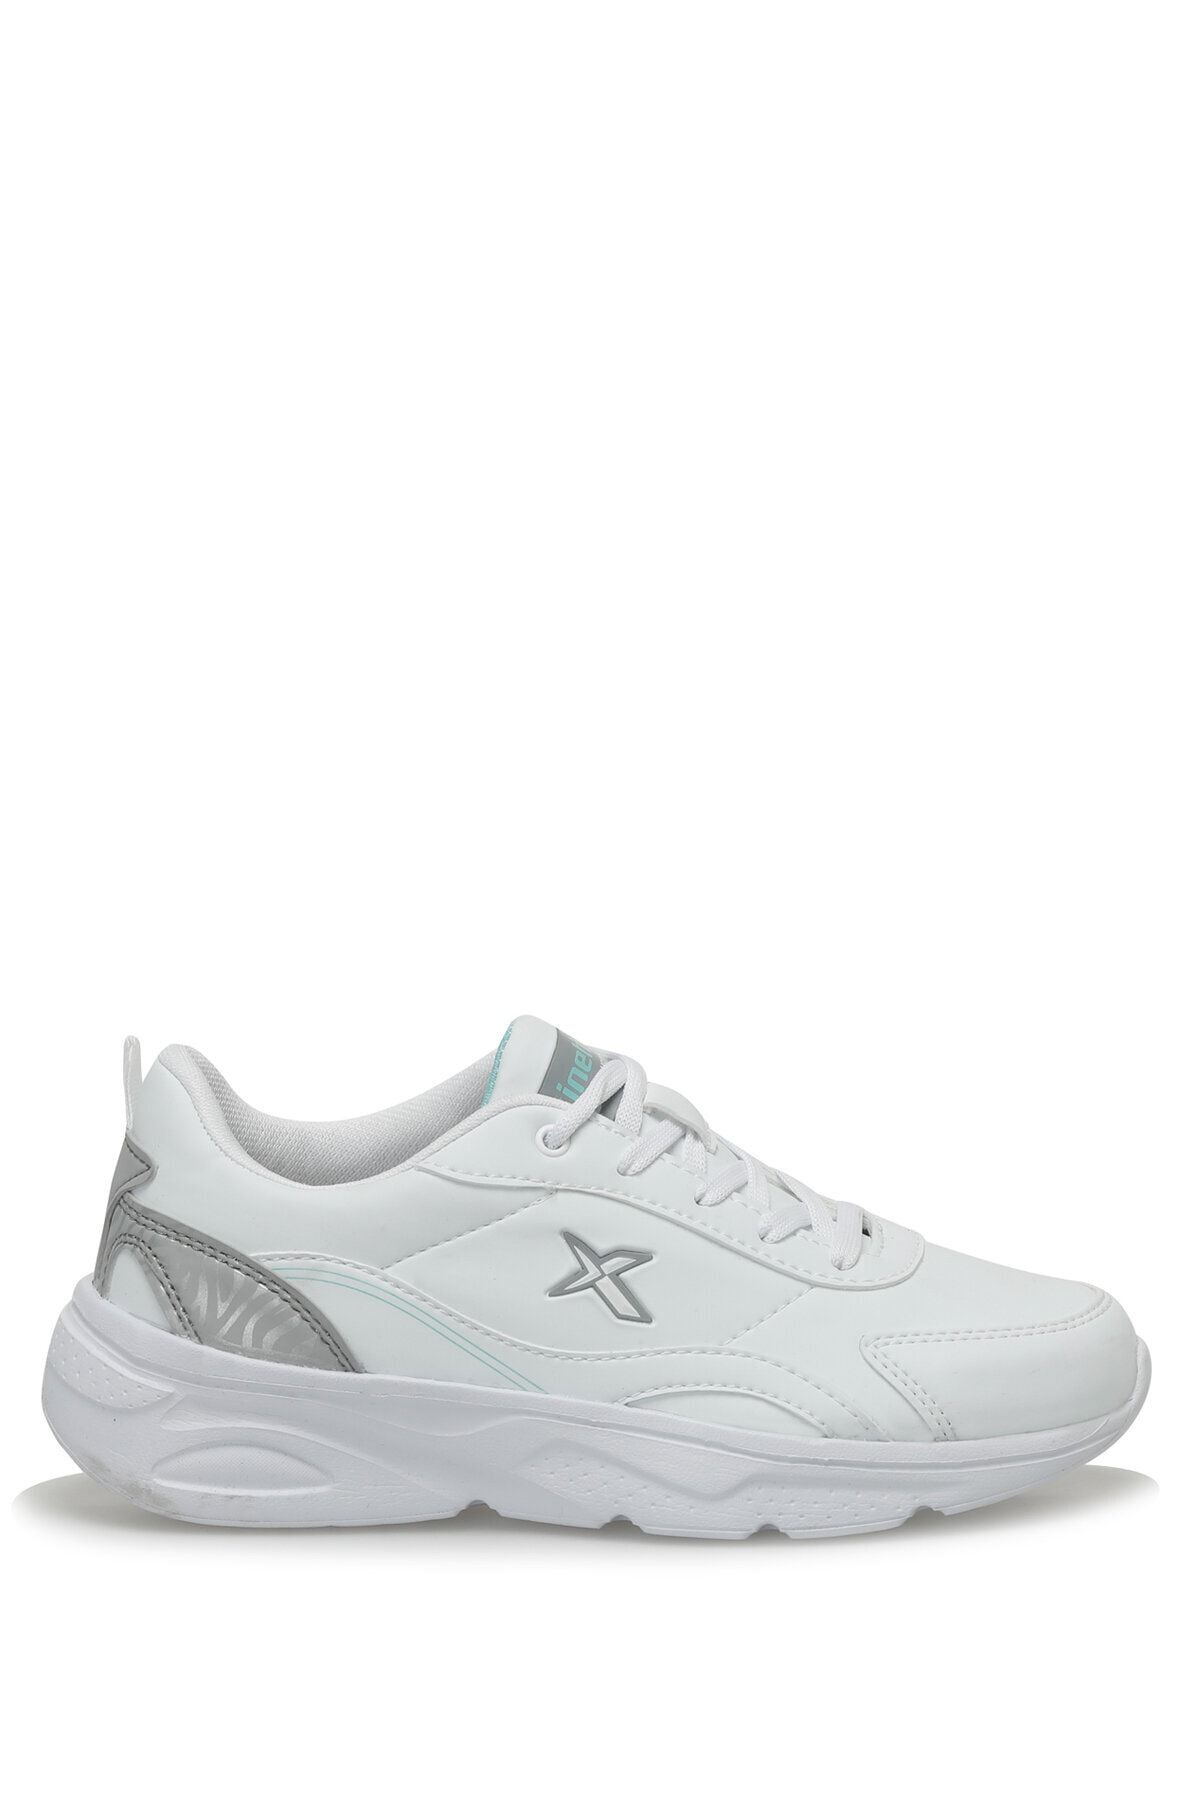 Kinetix DAISY PU W 3PR Beyaz Kadın Comfort Ayakkabı